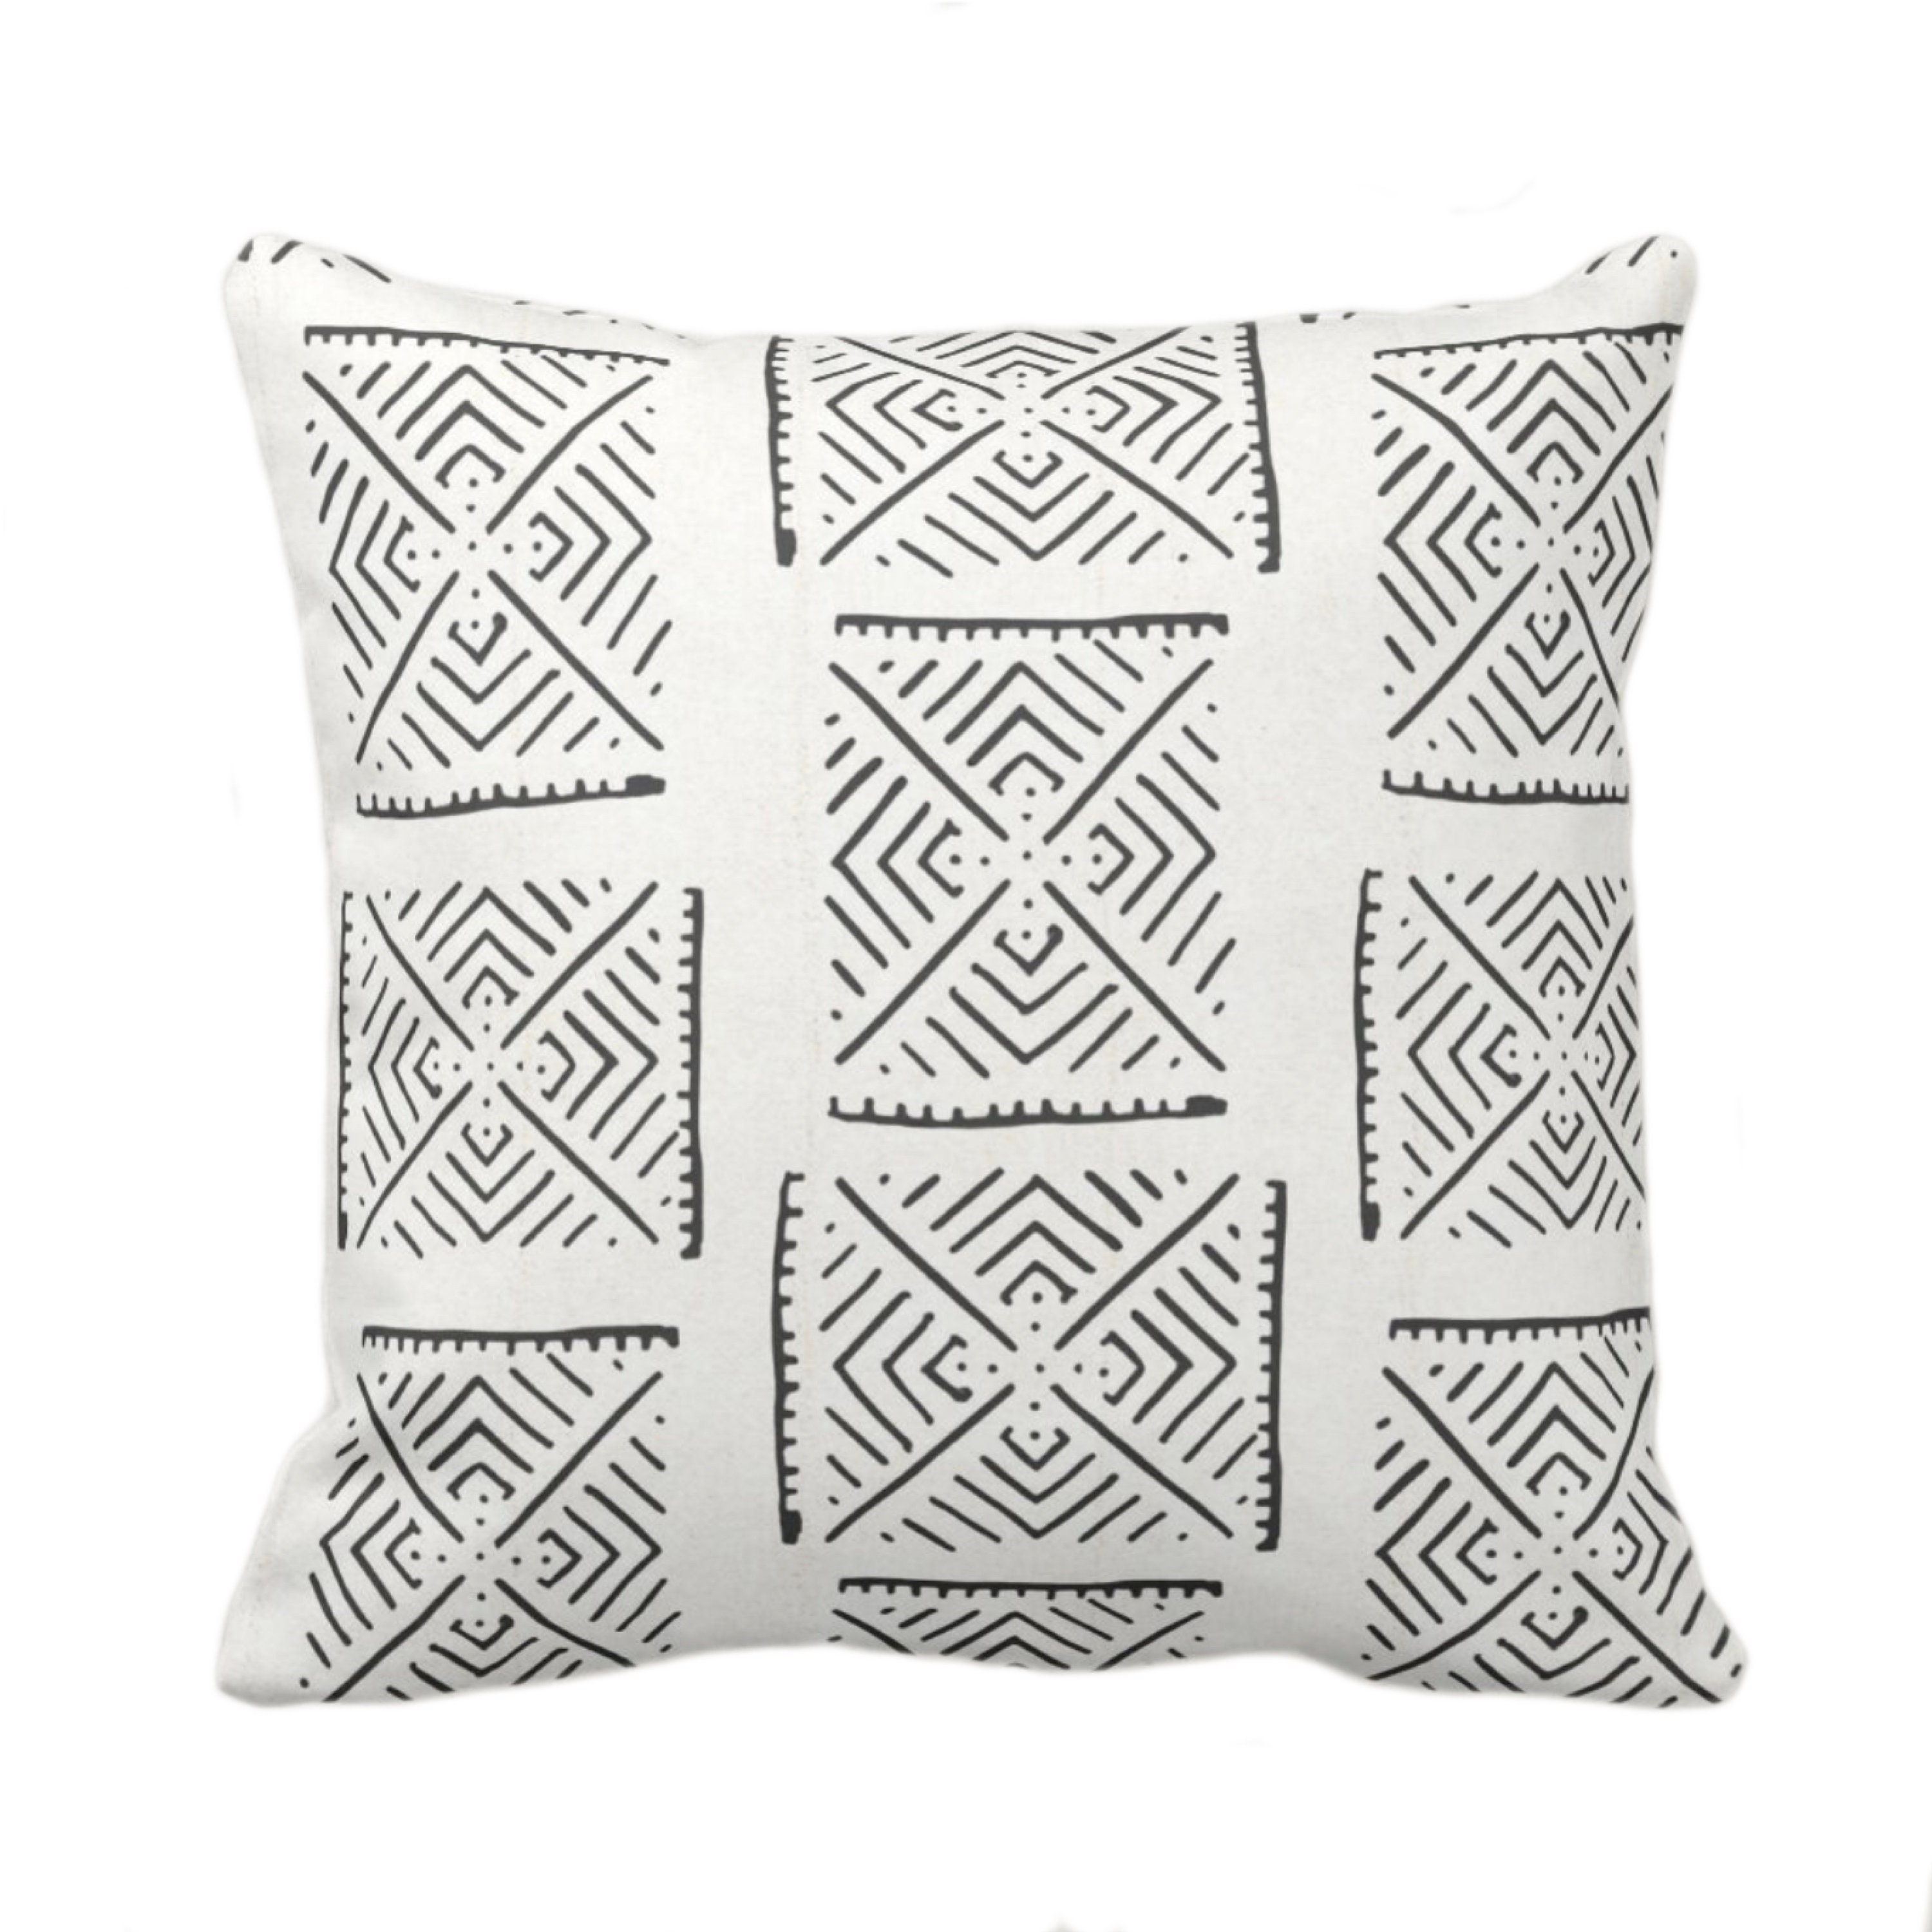 Medium Lumbar Pillow Cover - Black & White Triangle Mudcloth No.1